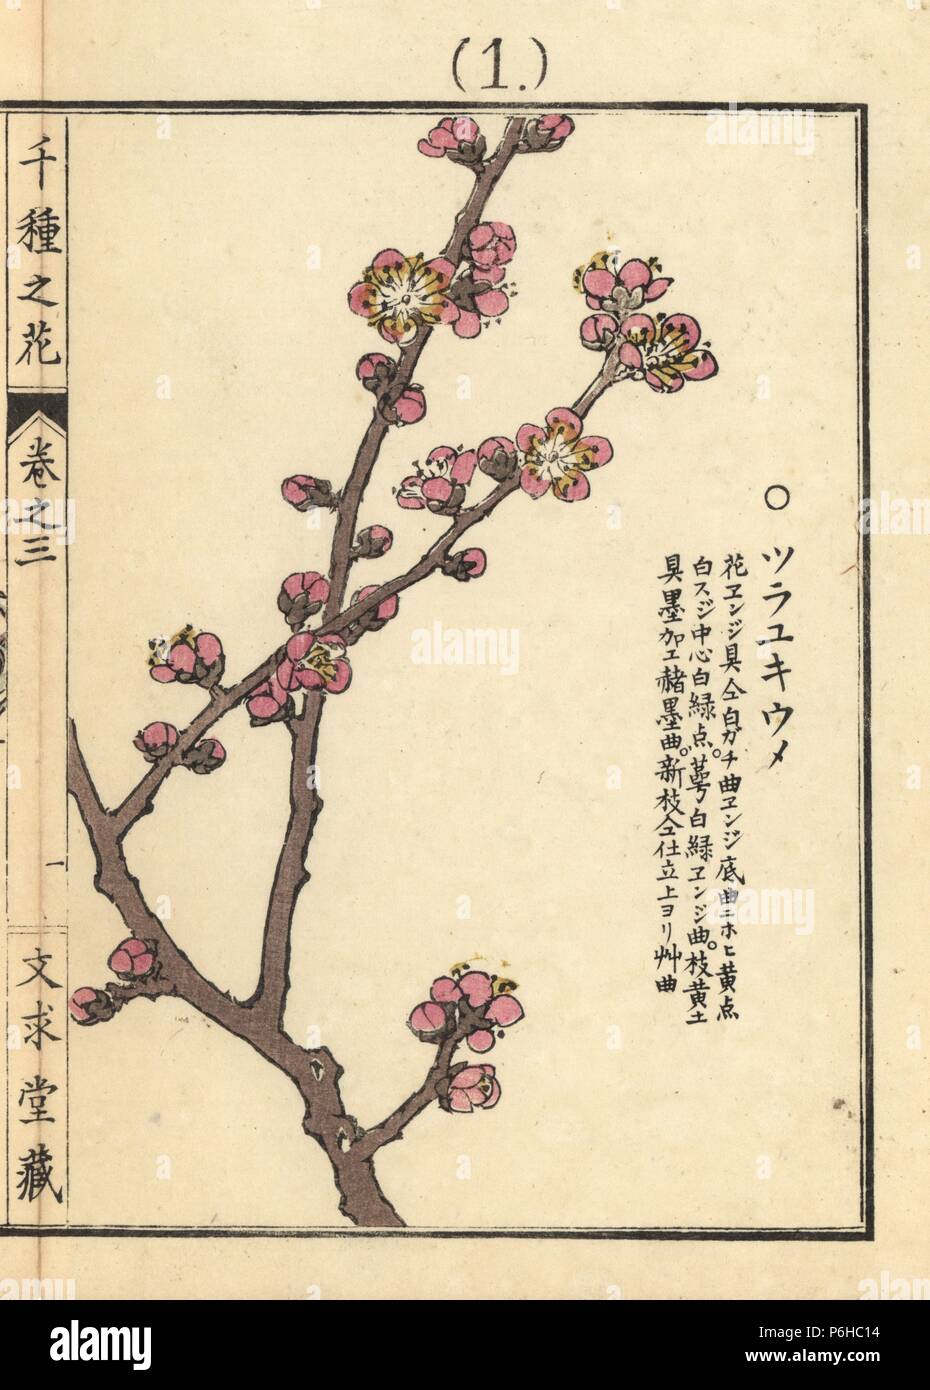 Chinesische oder japanische Aprikose, Pflaume Prunus japanische Aprikose, tsurayukiume. Papierkörbe Holzschnitt botanischen Drucken von Kono Bairei von Senshu no Hana (Tausend Sorten von Blumen), Bunkyudo, Kyoto, 1889. Stockfoto